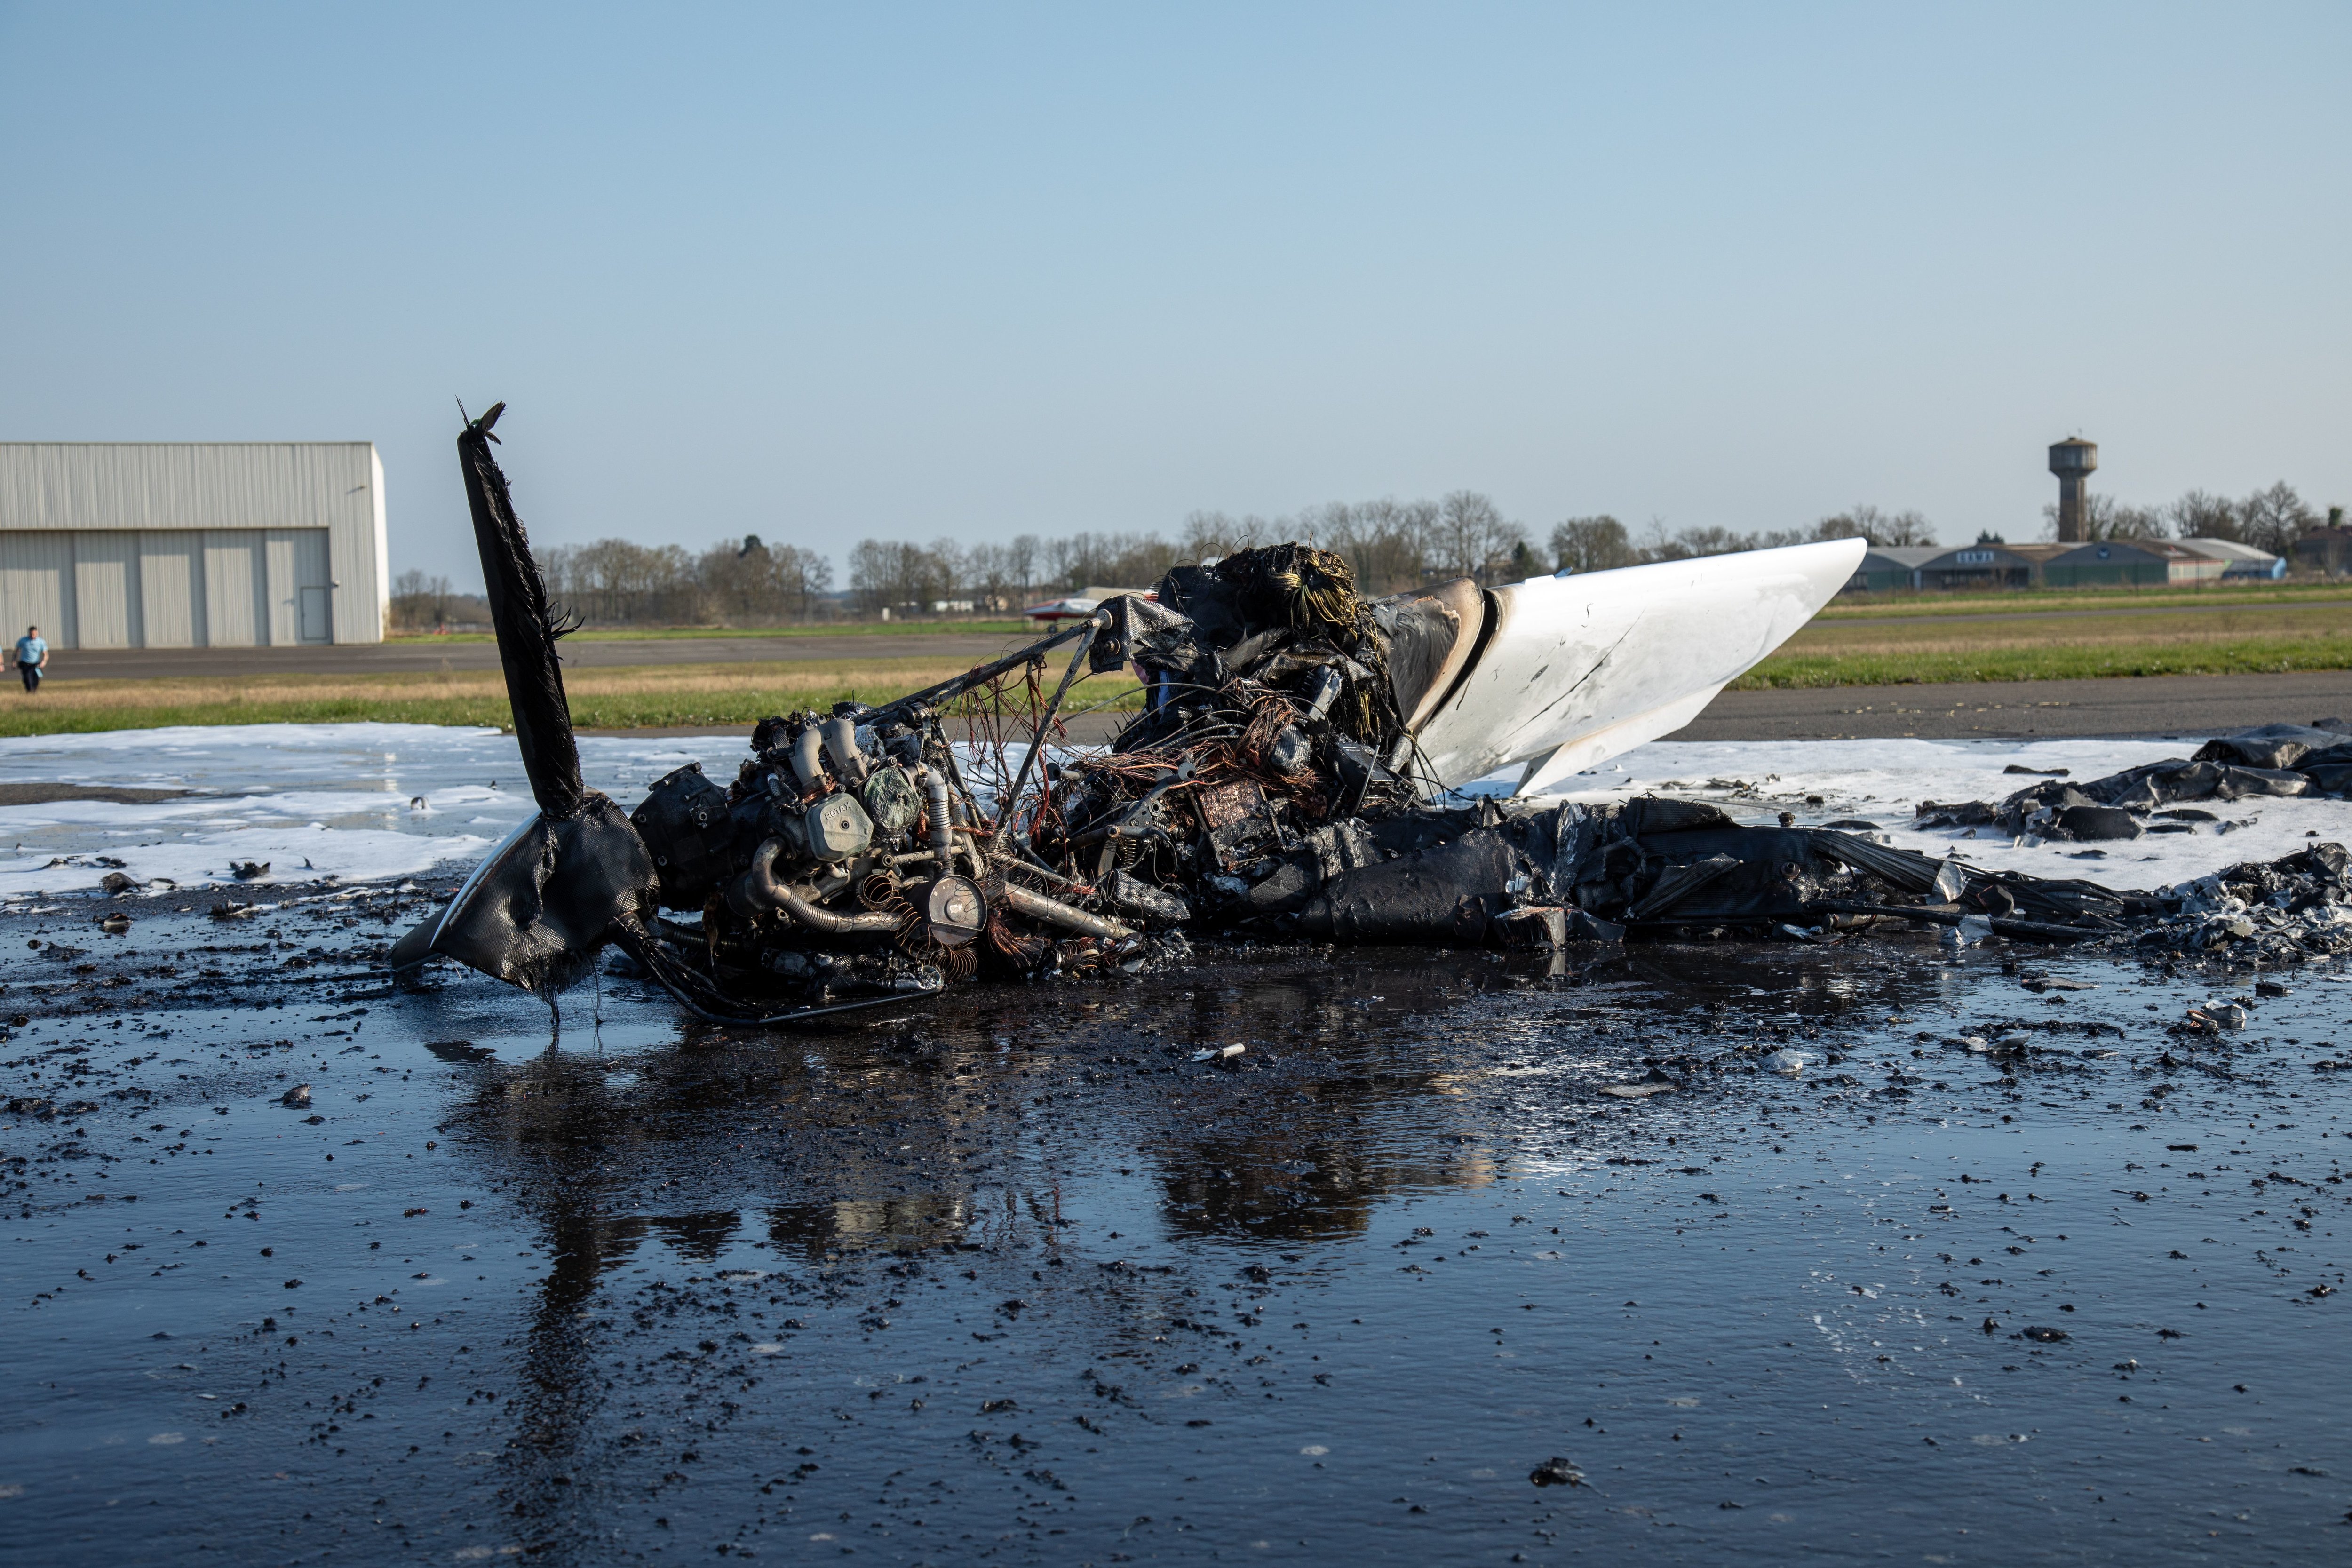 Un avion léger a pris feu à l'atterrissage sur la piste de l'aérodrome d'Etampes-Mondésir, à Guillerval. Le pilote souffre de brûlures mais son état n'inspire pas d'inquiétude. CYRILLE CASTAN©SDIS91